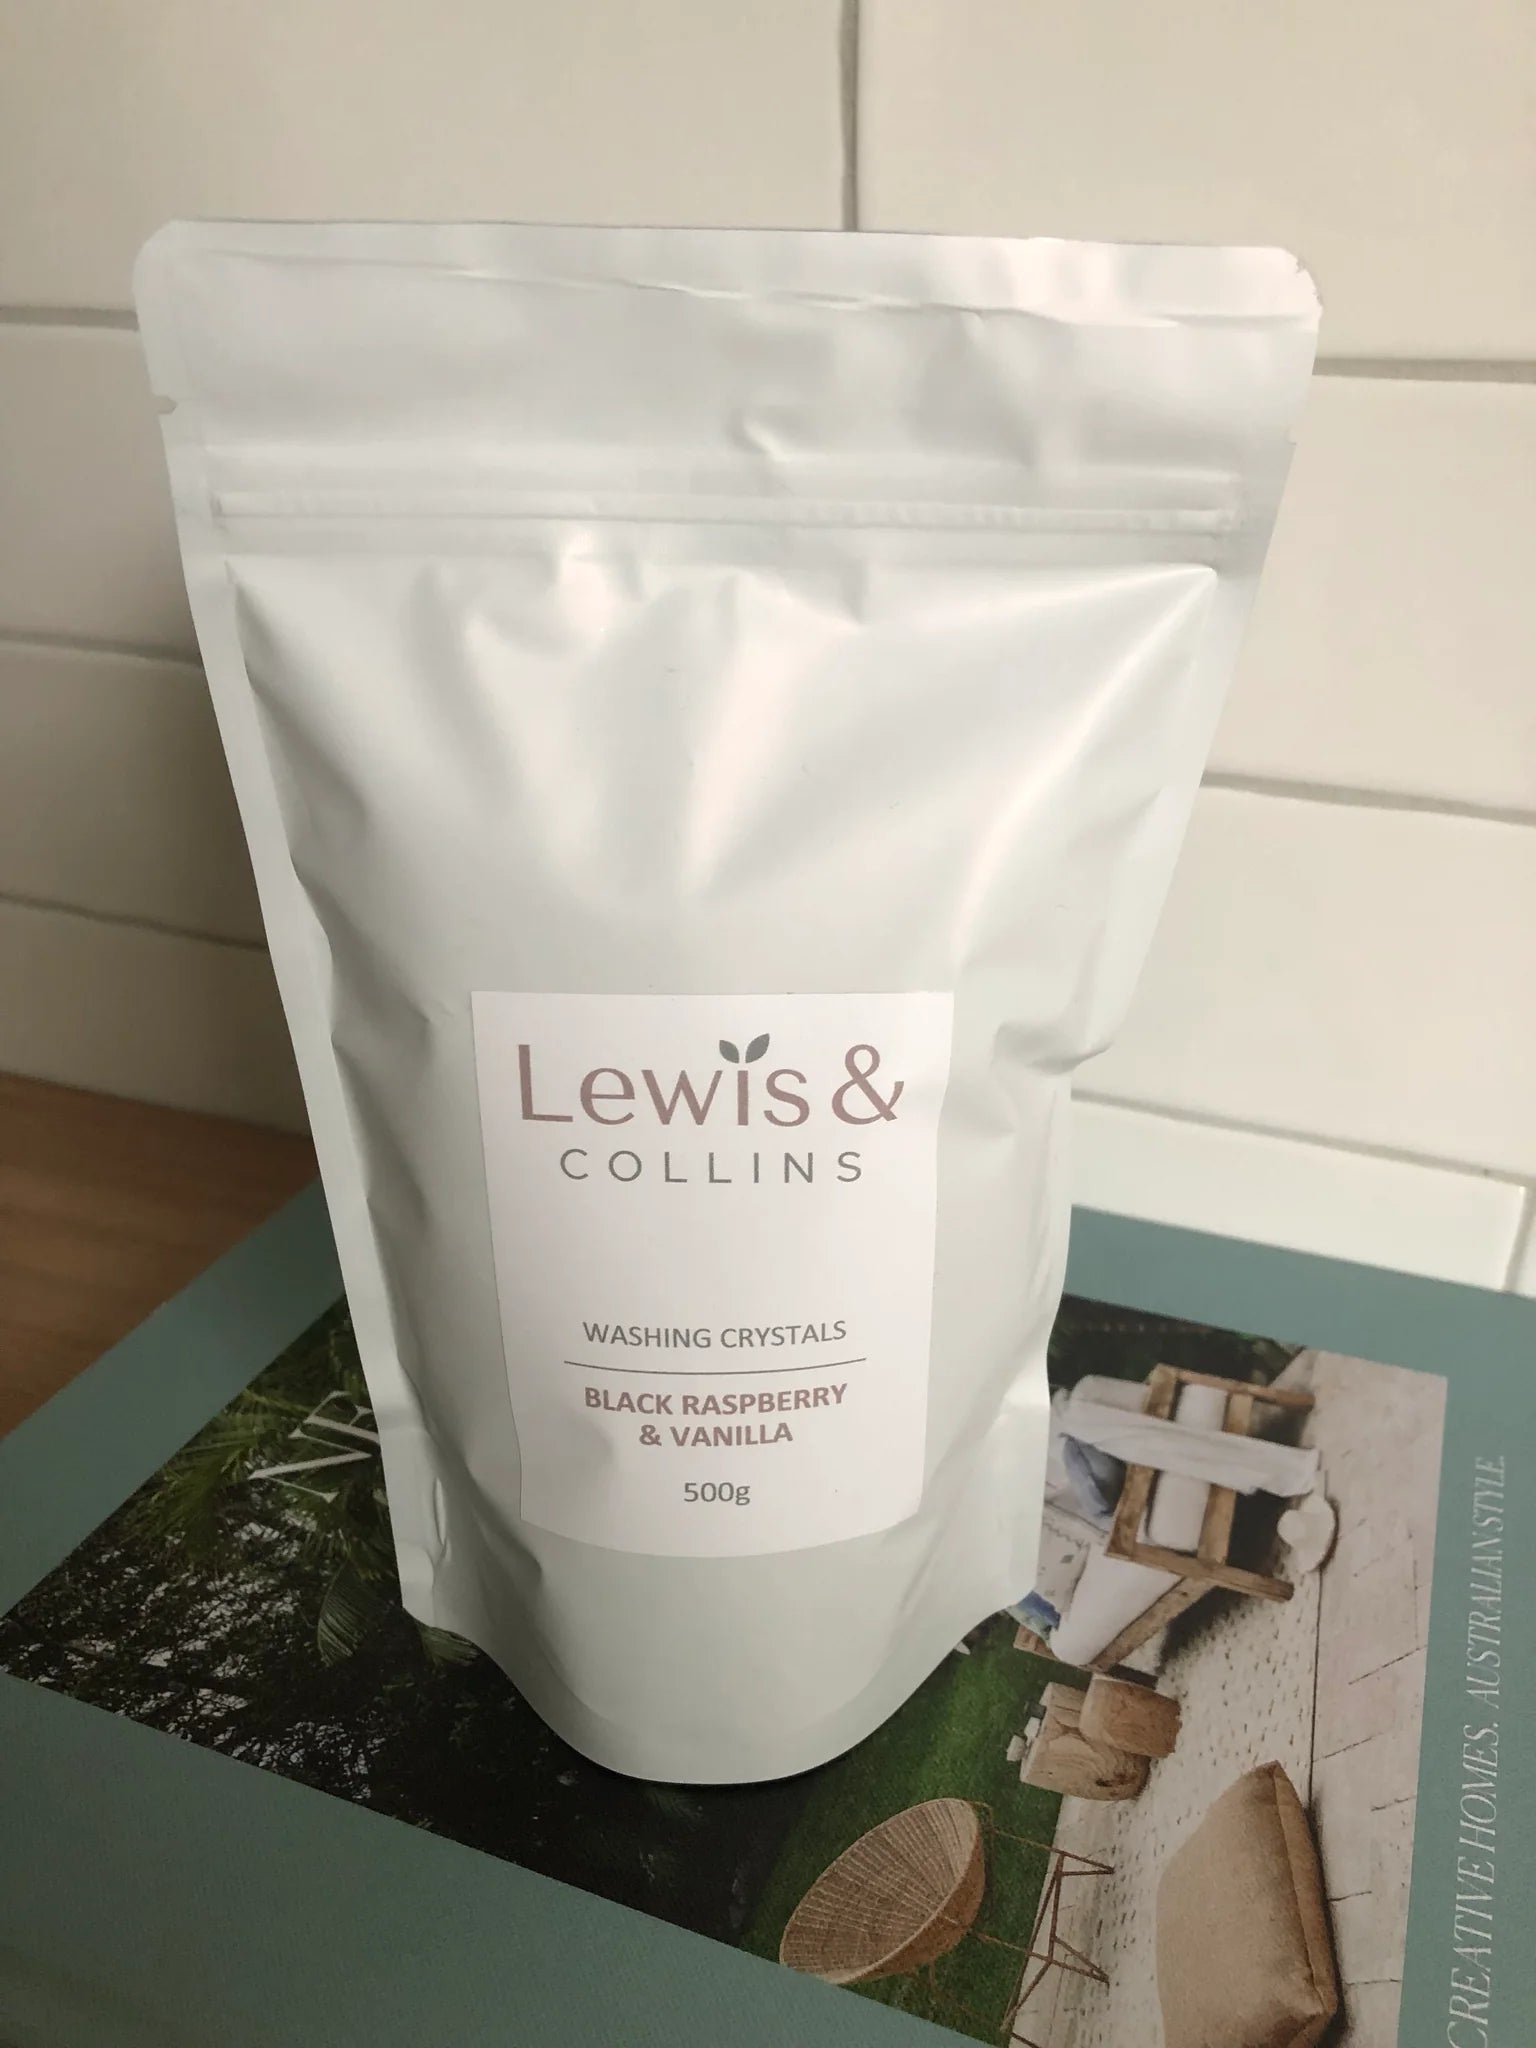 Lewis & Collins Washing Crystals - Black Raspberry & Vanilla 500g